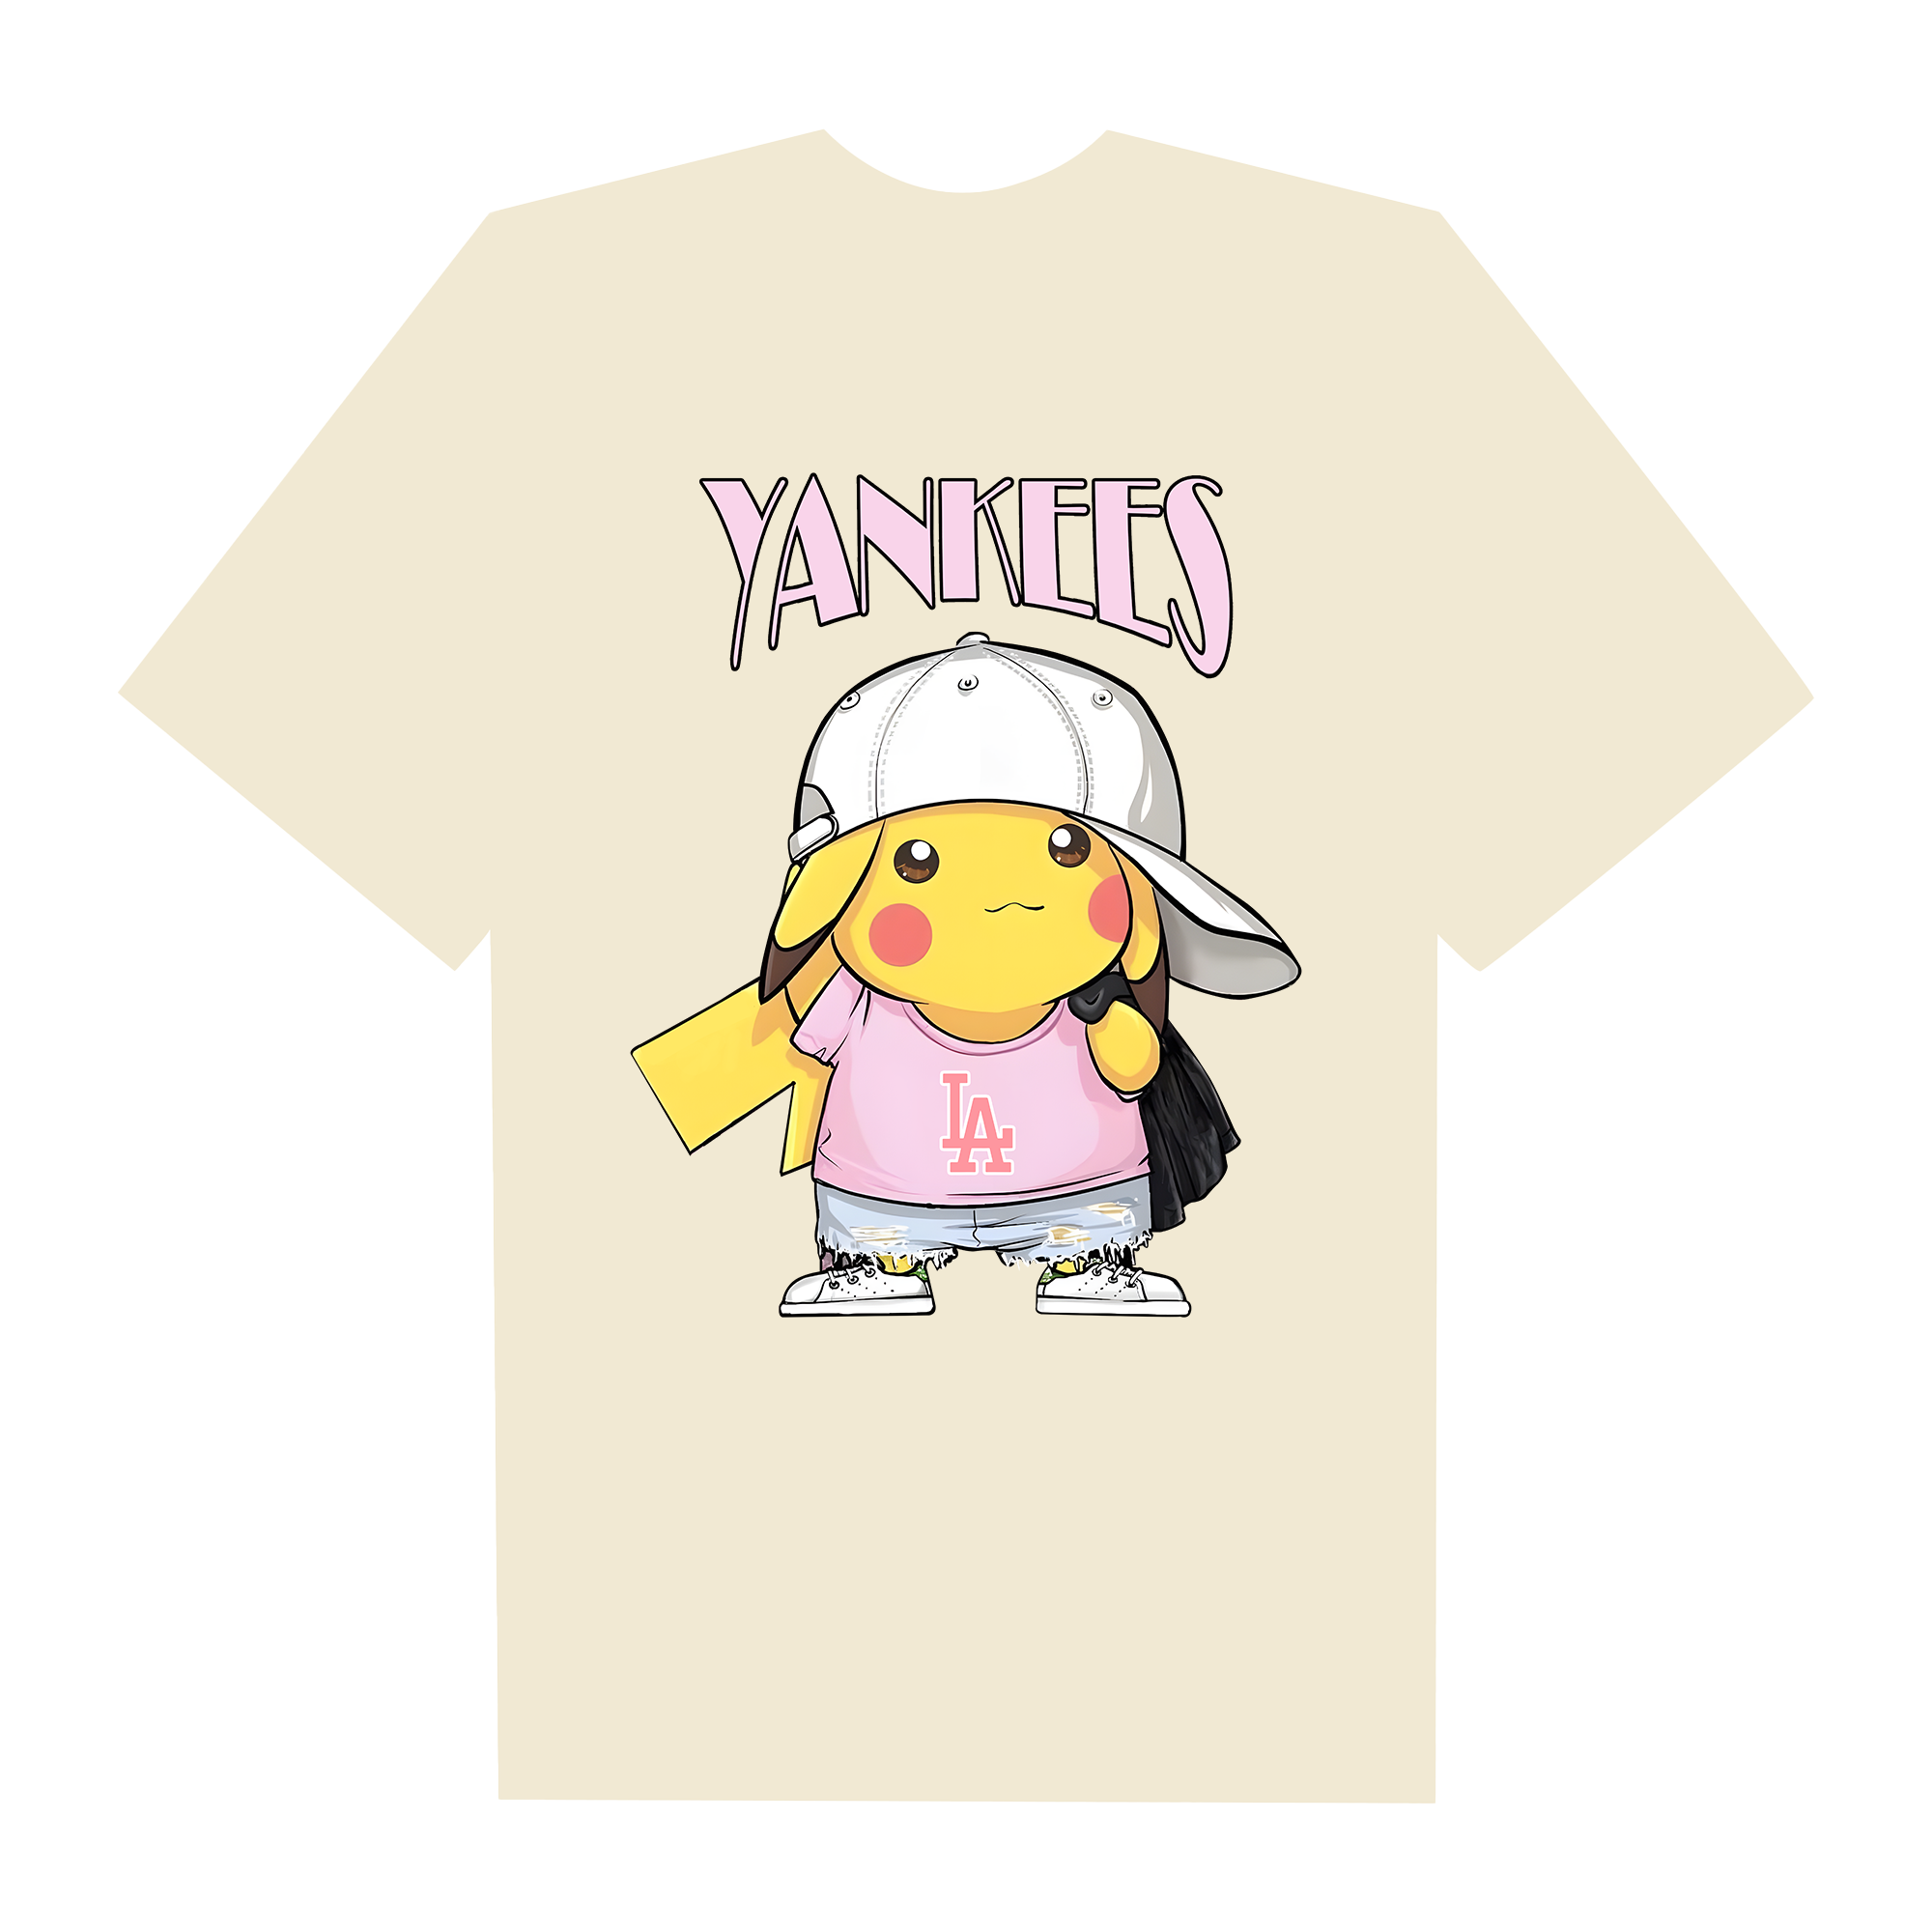 MLB Anime Pokemon Yankees Pikachu T-Shirt